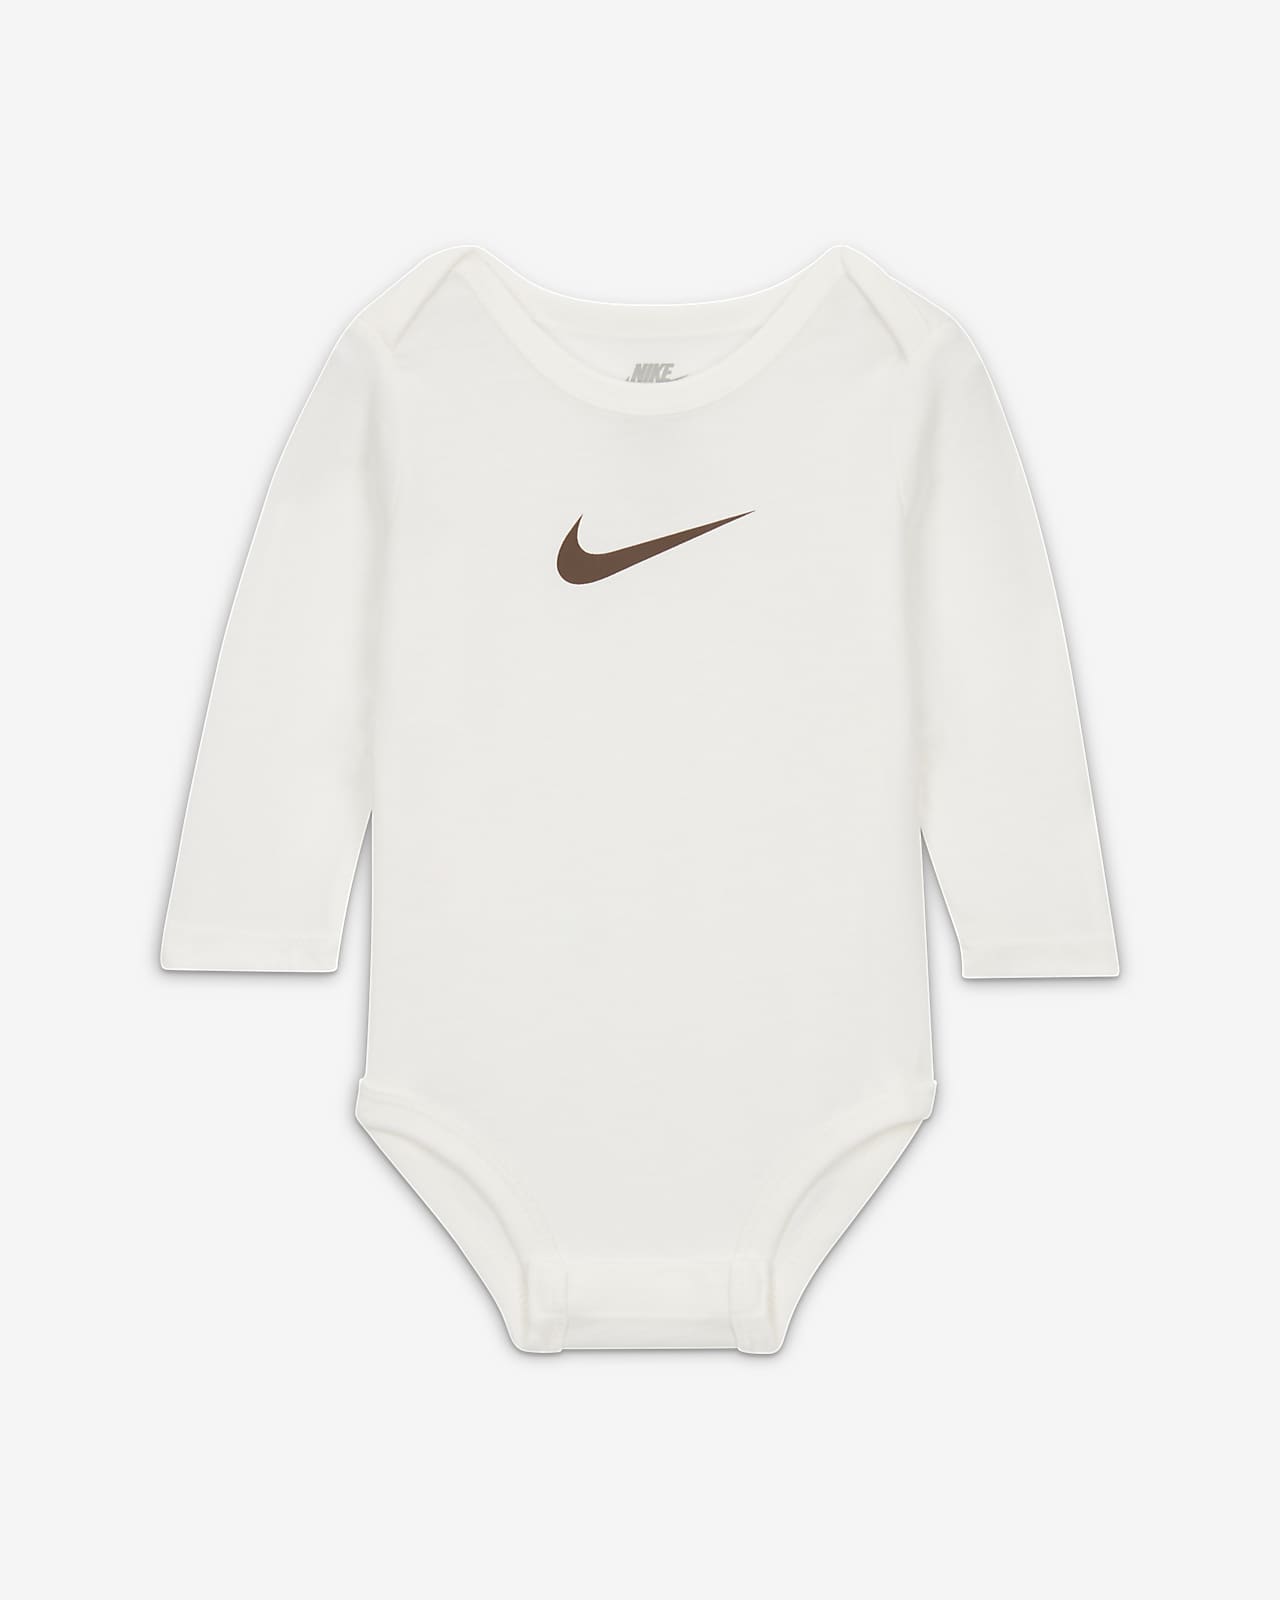 Nike E1D1 3-Pack Bodysuits Baby Bodysuit Pack